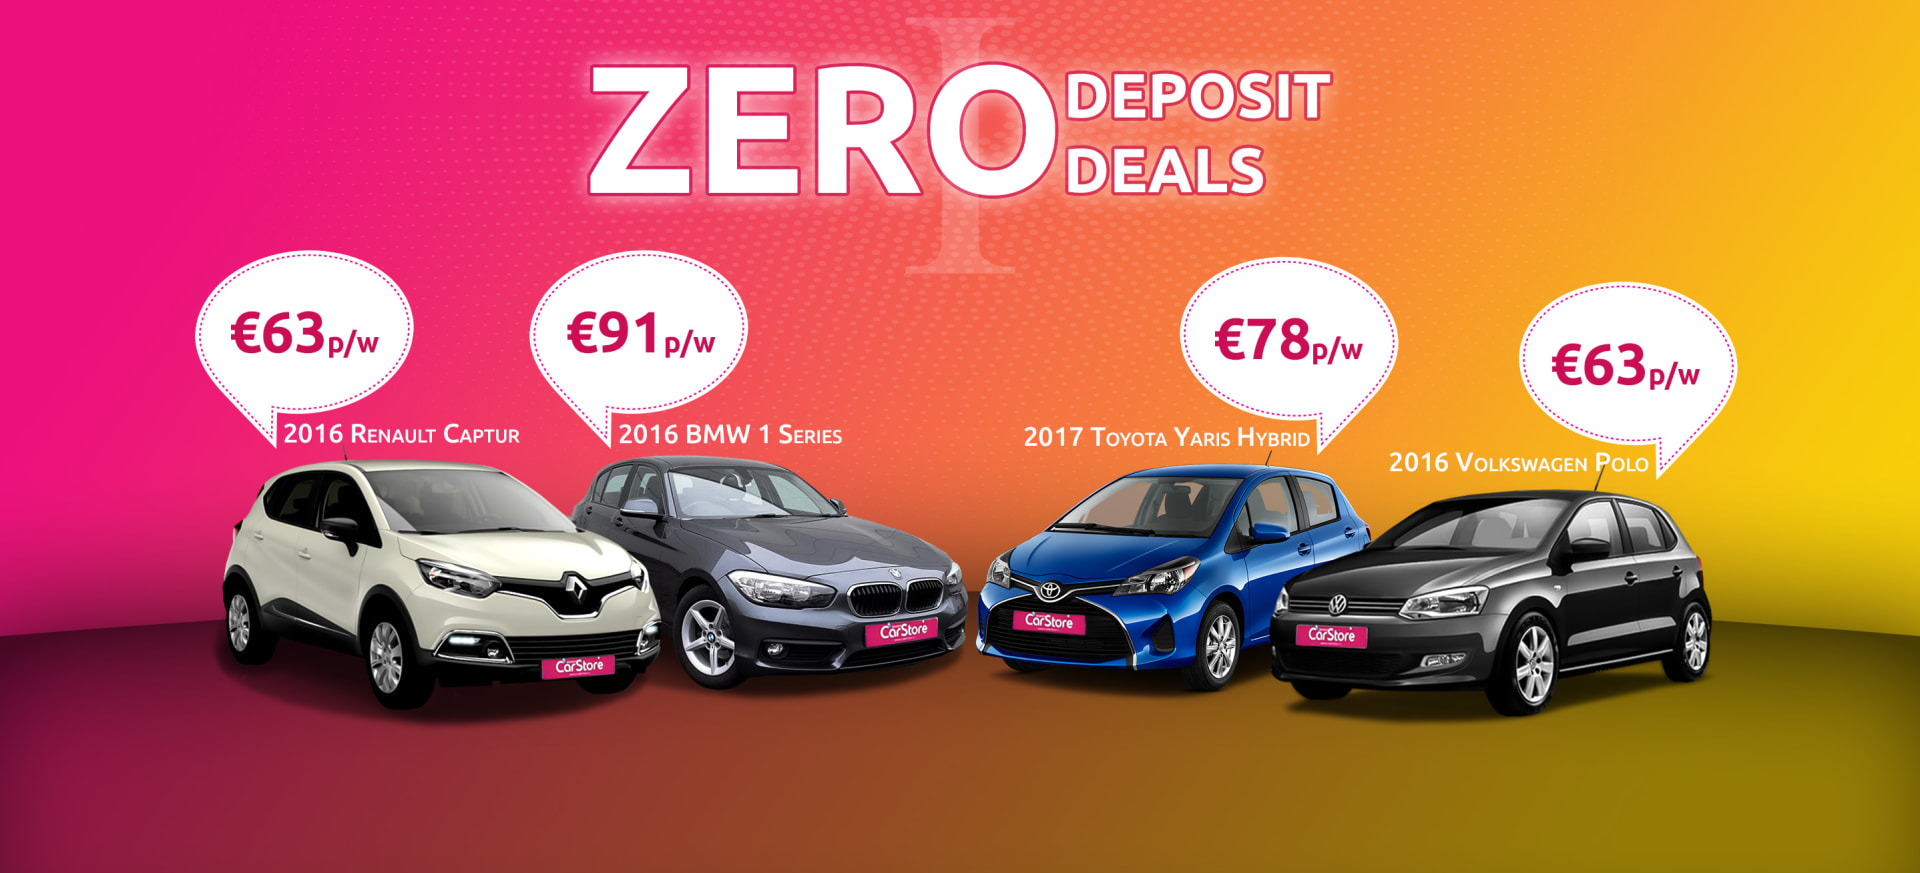 Zero Deposit Deals One